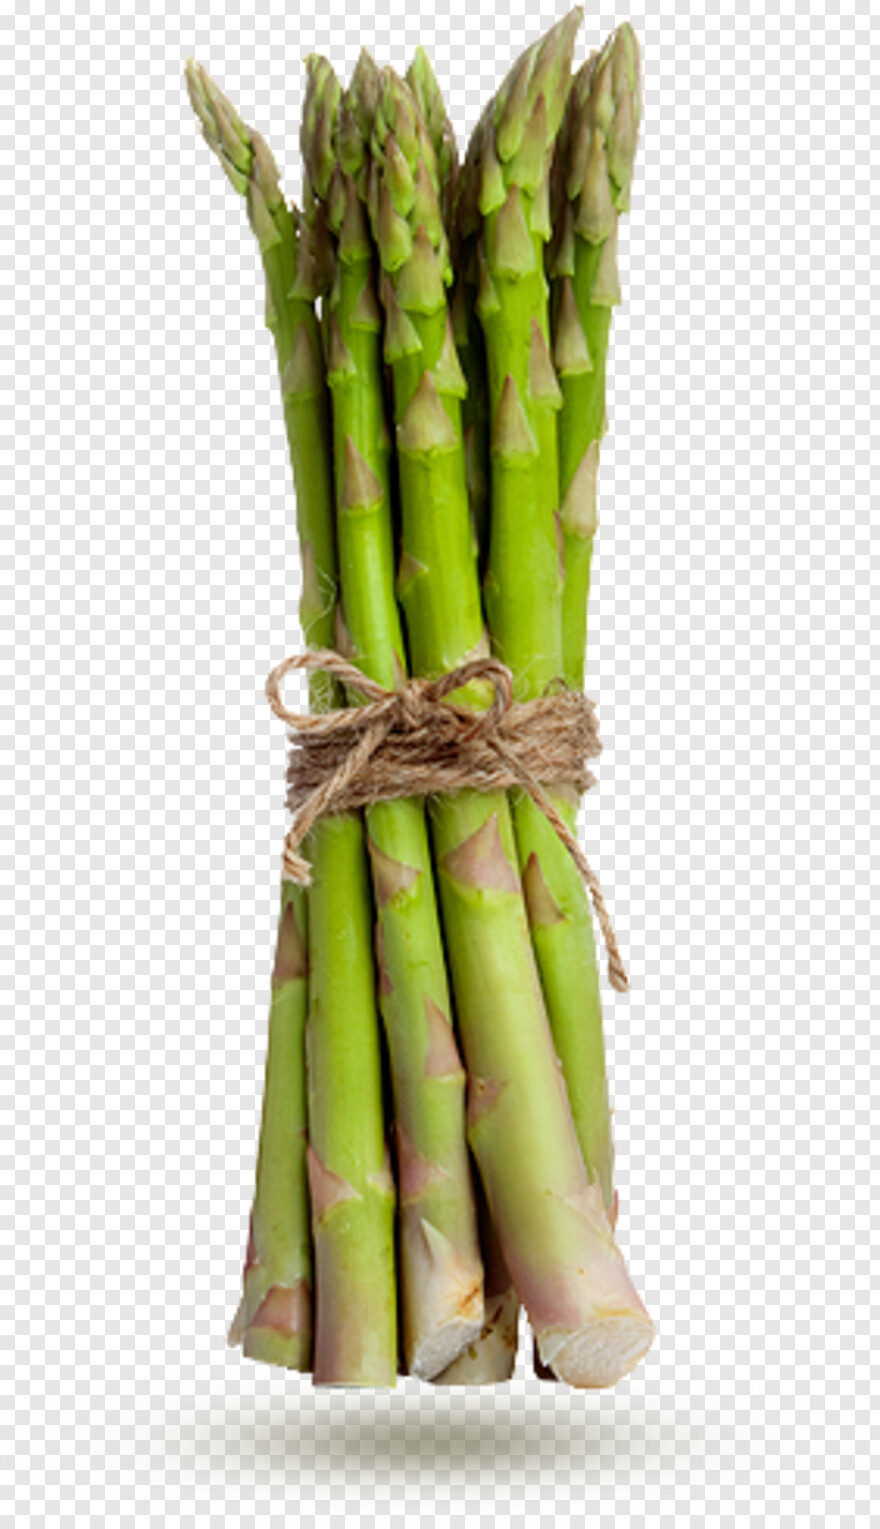 asparagus # 468432